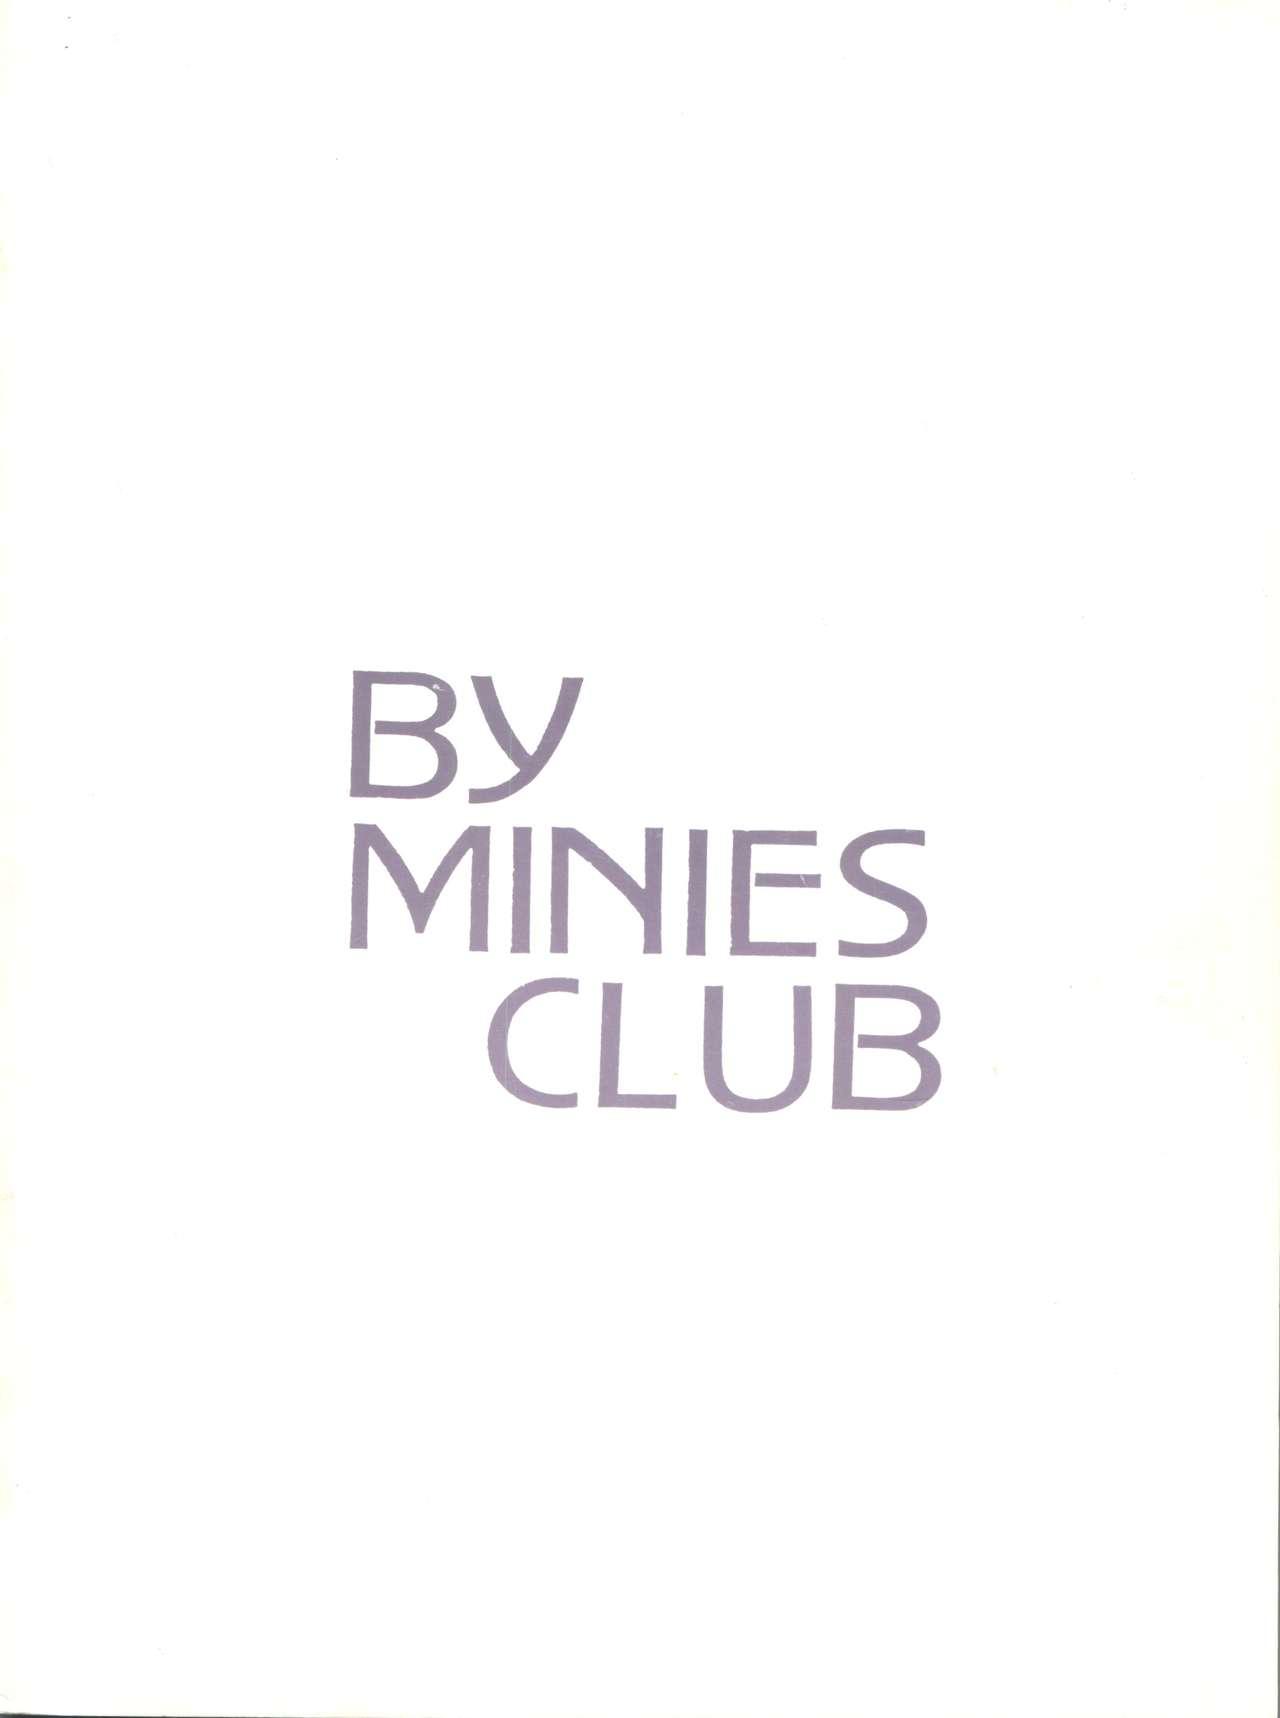 After Midnight - Minies Club 25 36